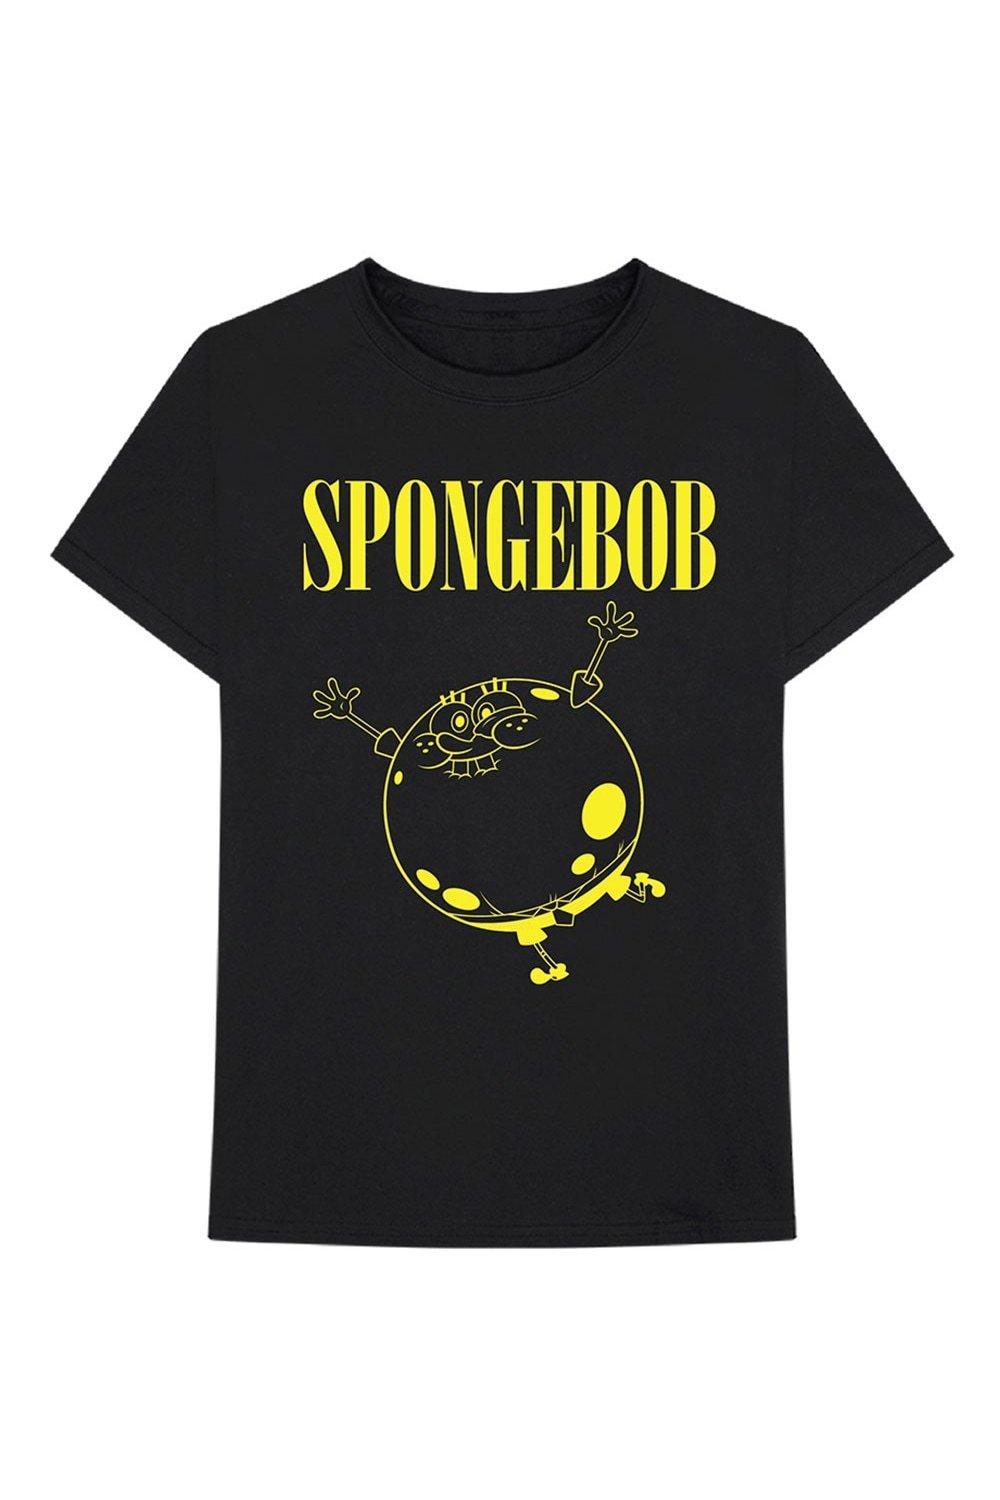 Хлопковая футболка SpongeBob SquarePants, черный новый ученик губка боб квадратные штаны